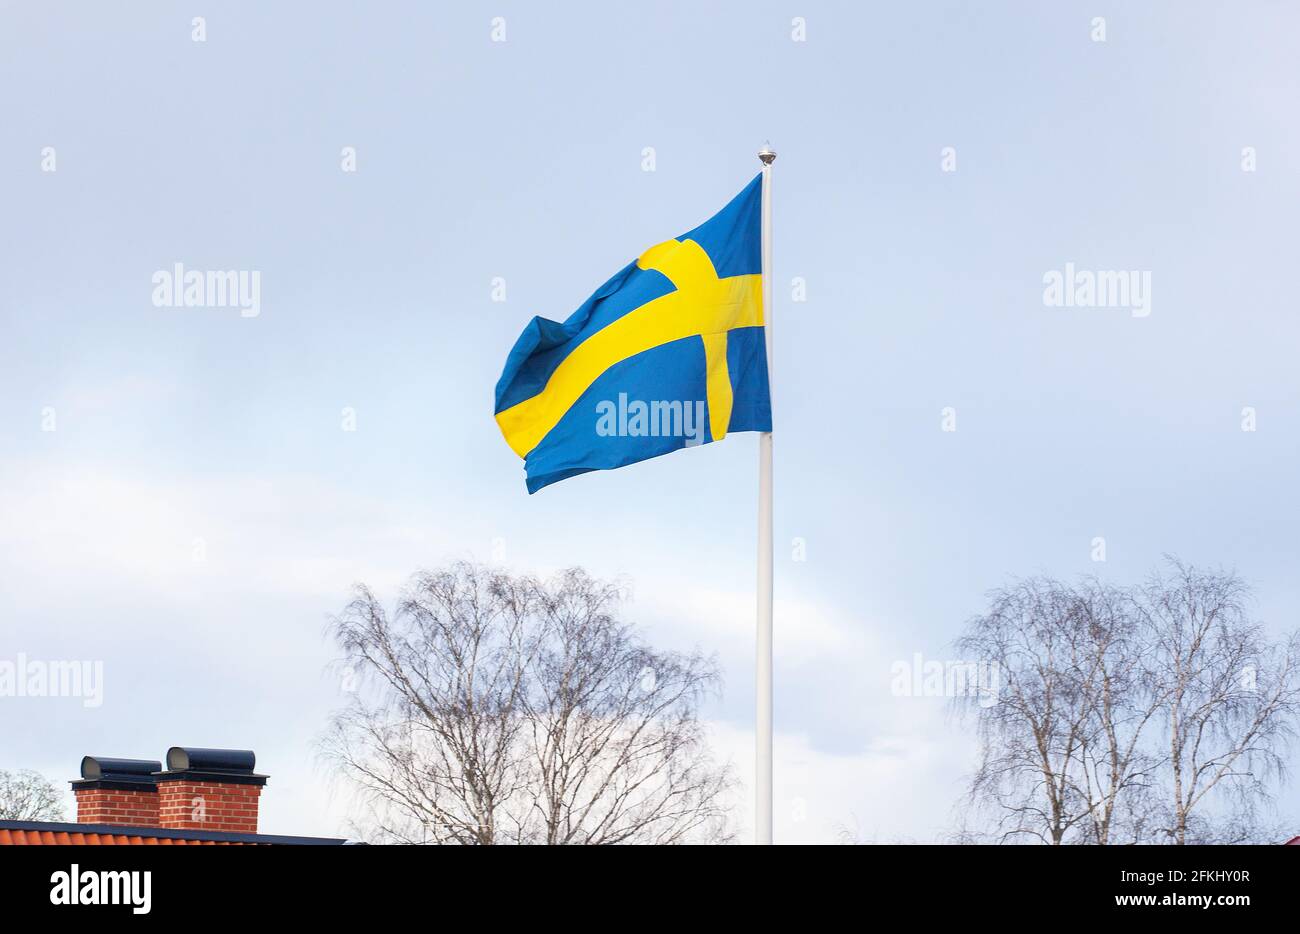 La bandera sueca en el viento Suecia Foto de stock